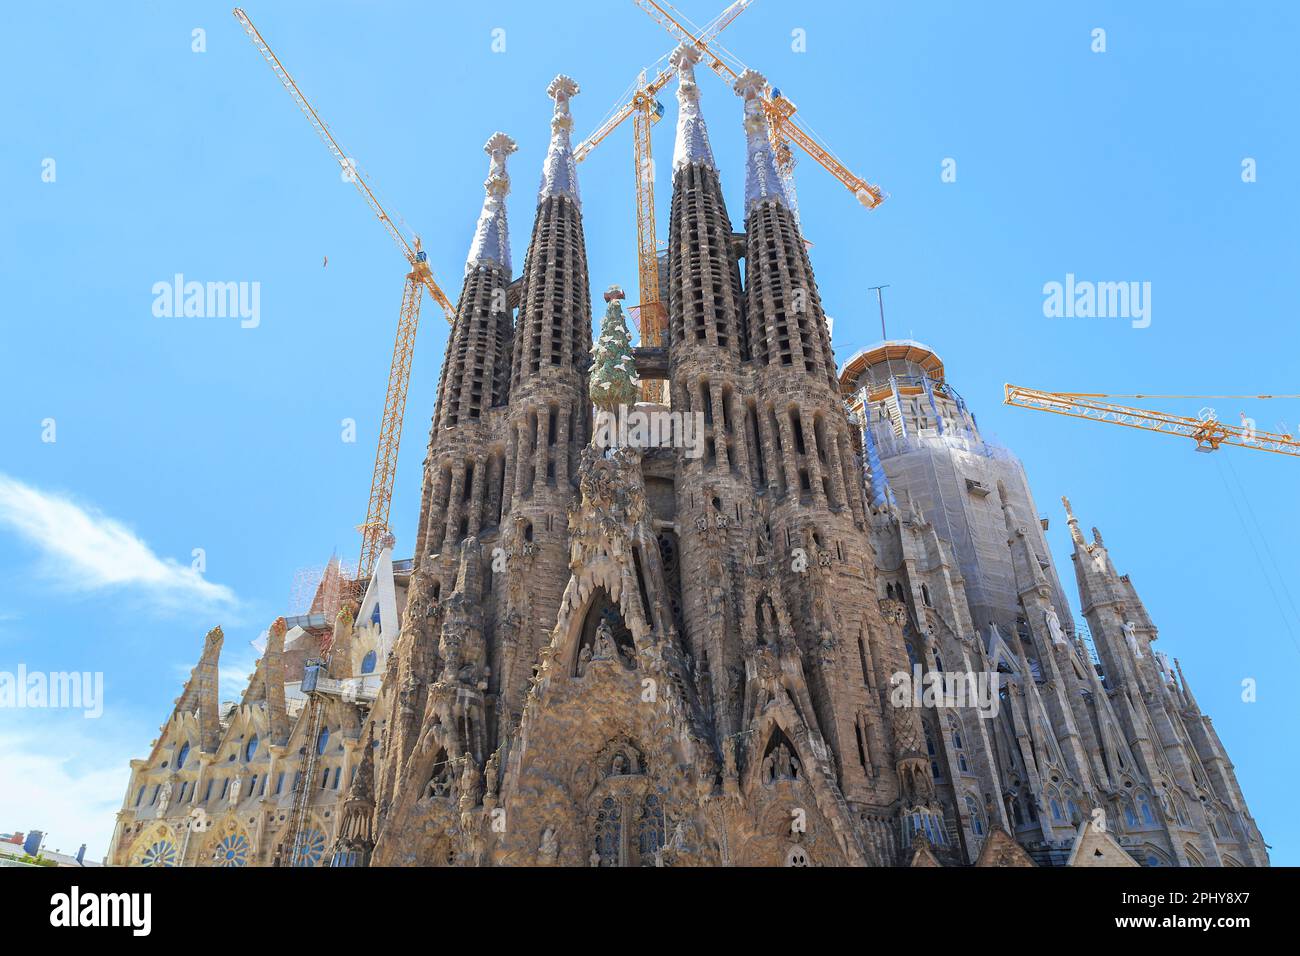 BARCELONA, SPANIEN - 12. MAI 2017: Dies ist ein Teil des Baus des Tempels Sagrada Familia, ein ungewöhnlicher Tempel, der seit 198 gebaut wurde Stockfoto